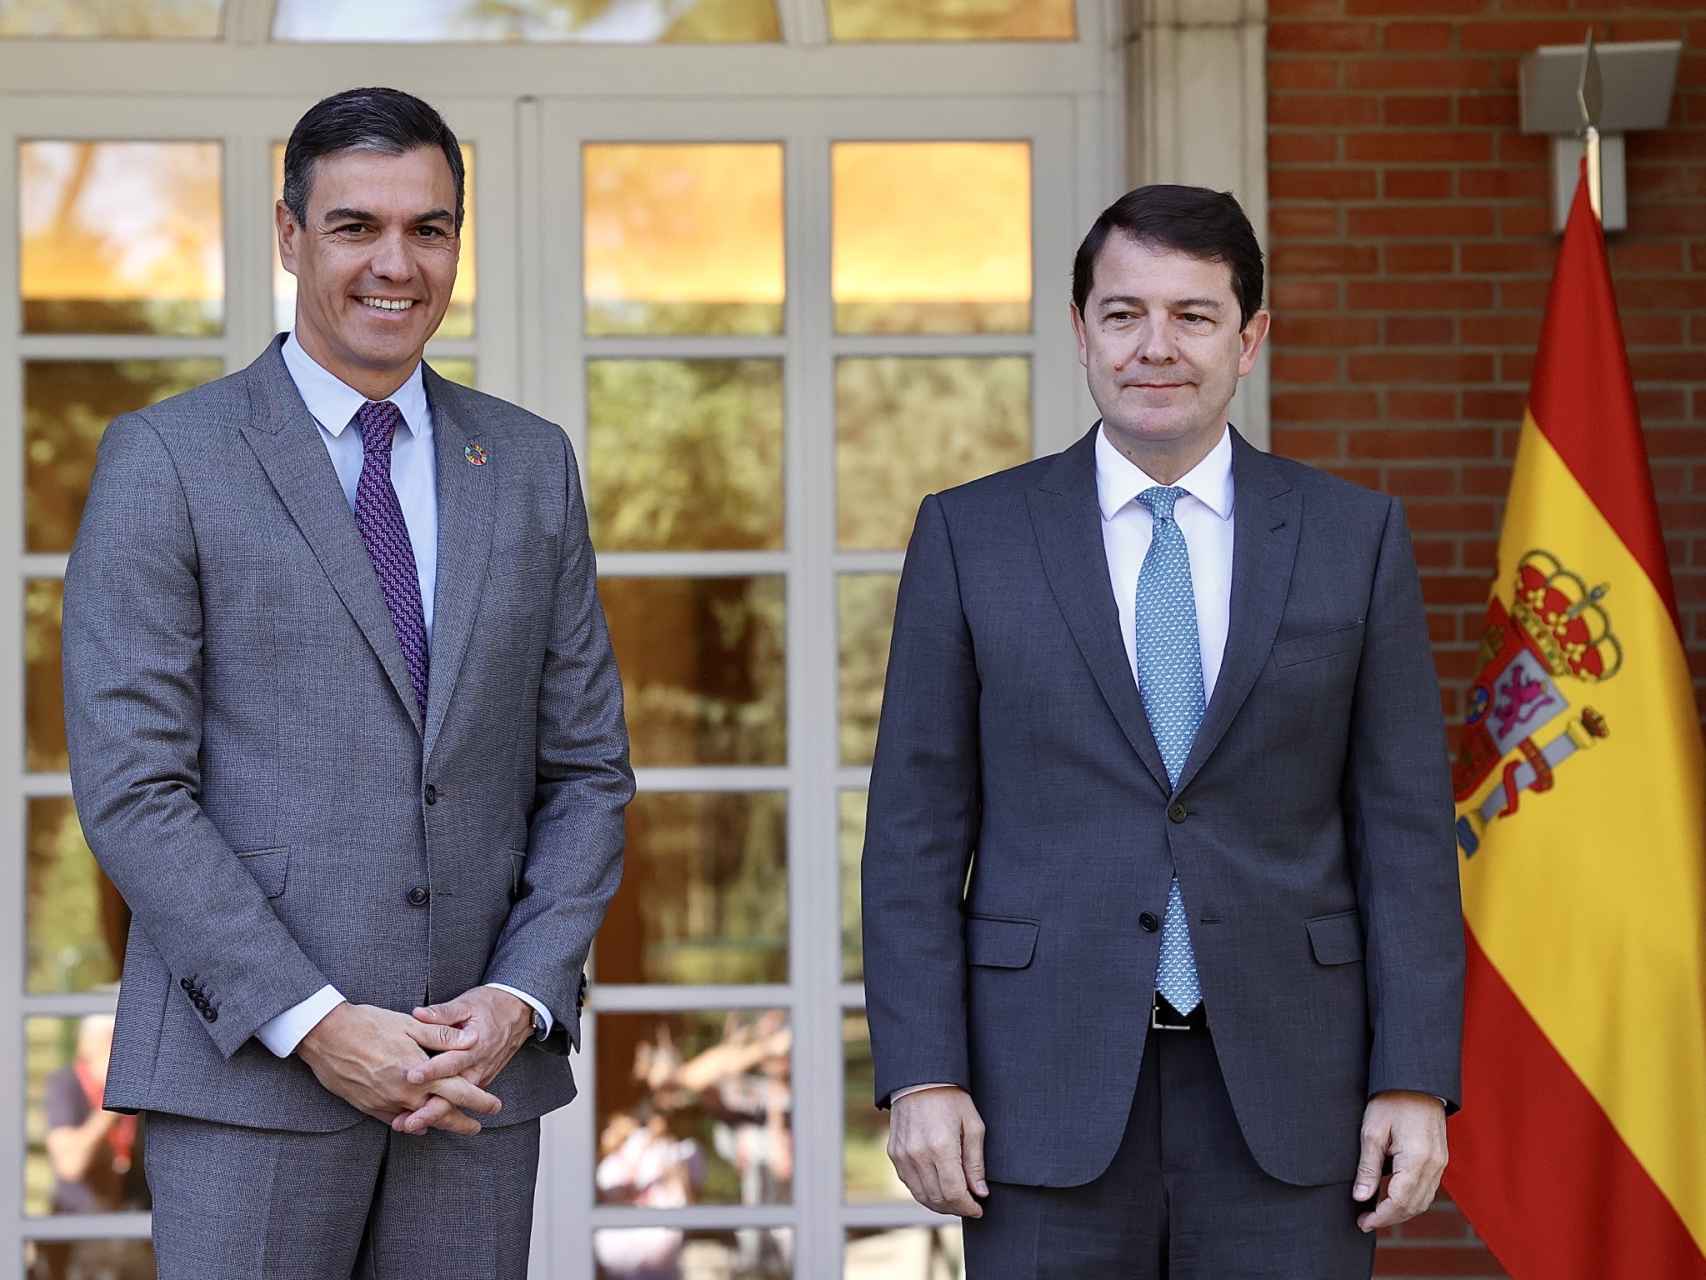 El presidente del Gobierno, Pedro Sánchez, y el jefe del Ejecutivo autonómico, Alfonso Fernández Mañueco, durante un encuentro en julio de 2022.